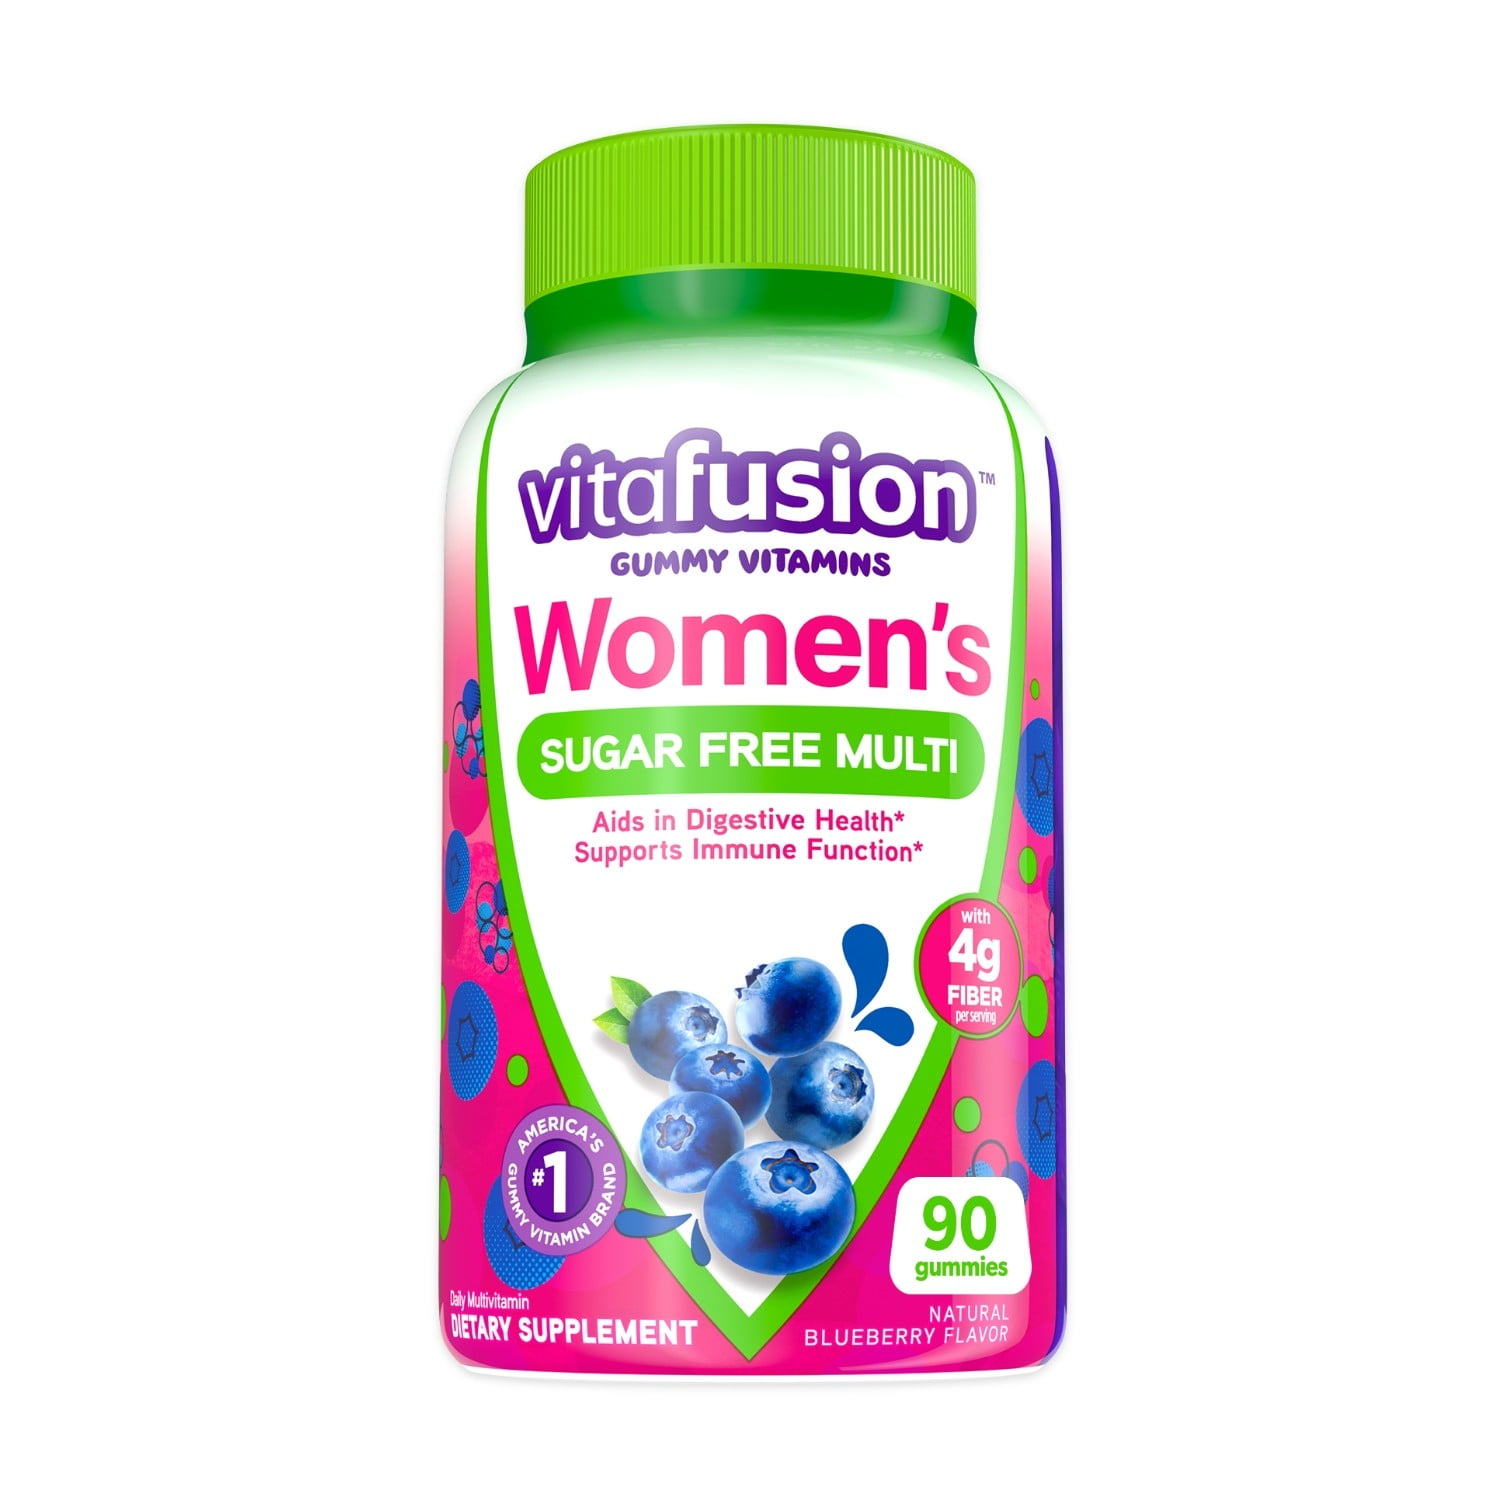 Vitafusion Women's Sugar Free Daily Multivitamin Gummy, Blueberry Flavored